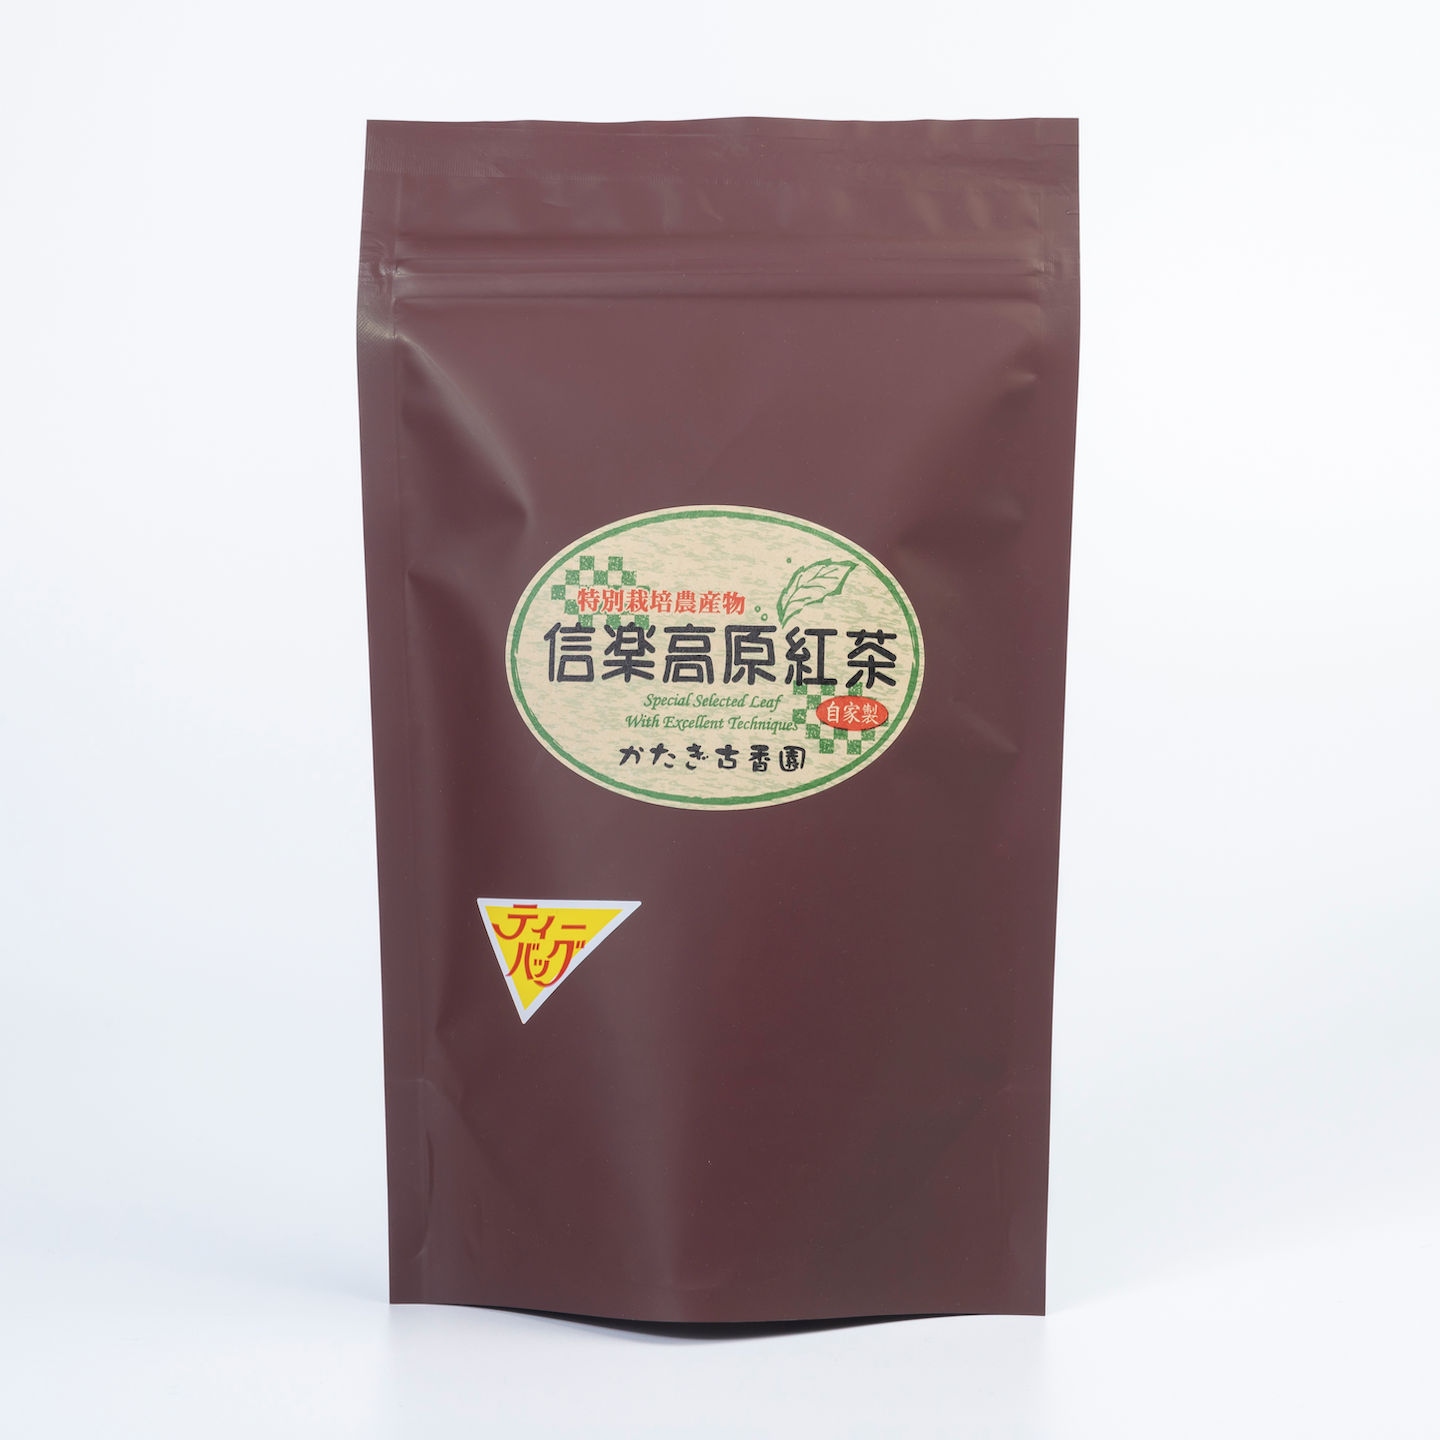 信楽高原紅茶（20パック入り）特別栽培農産物 農薬不使用栽培